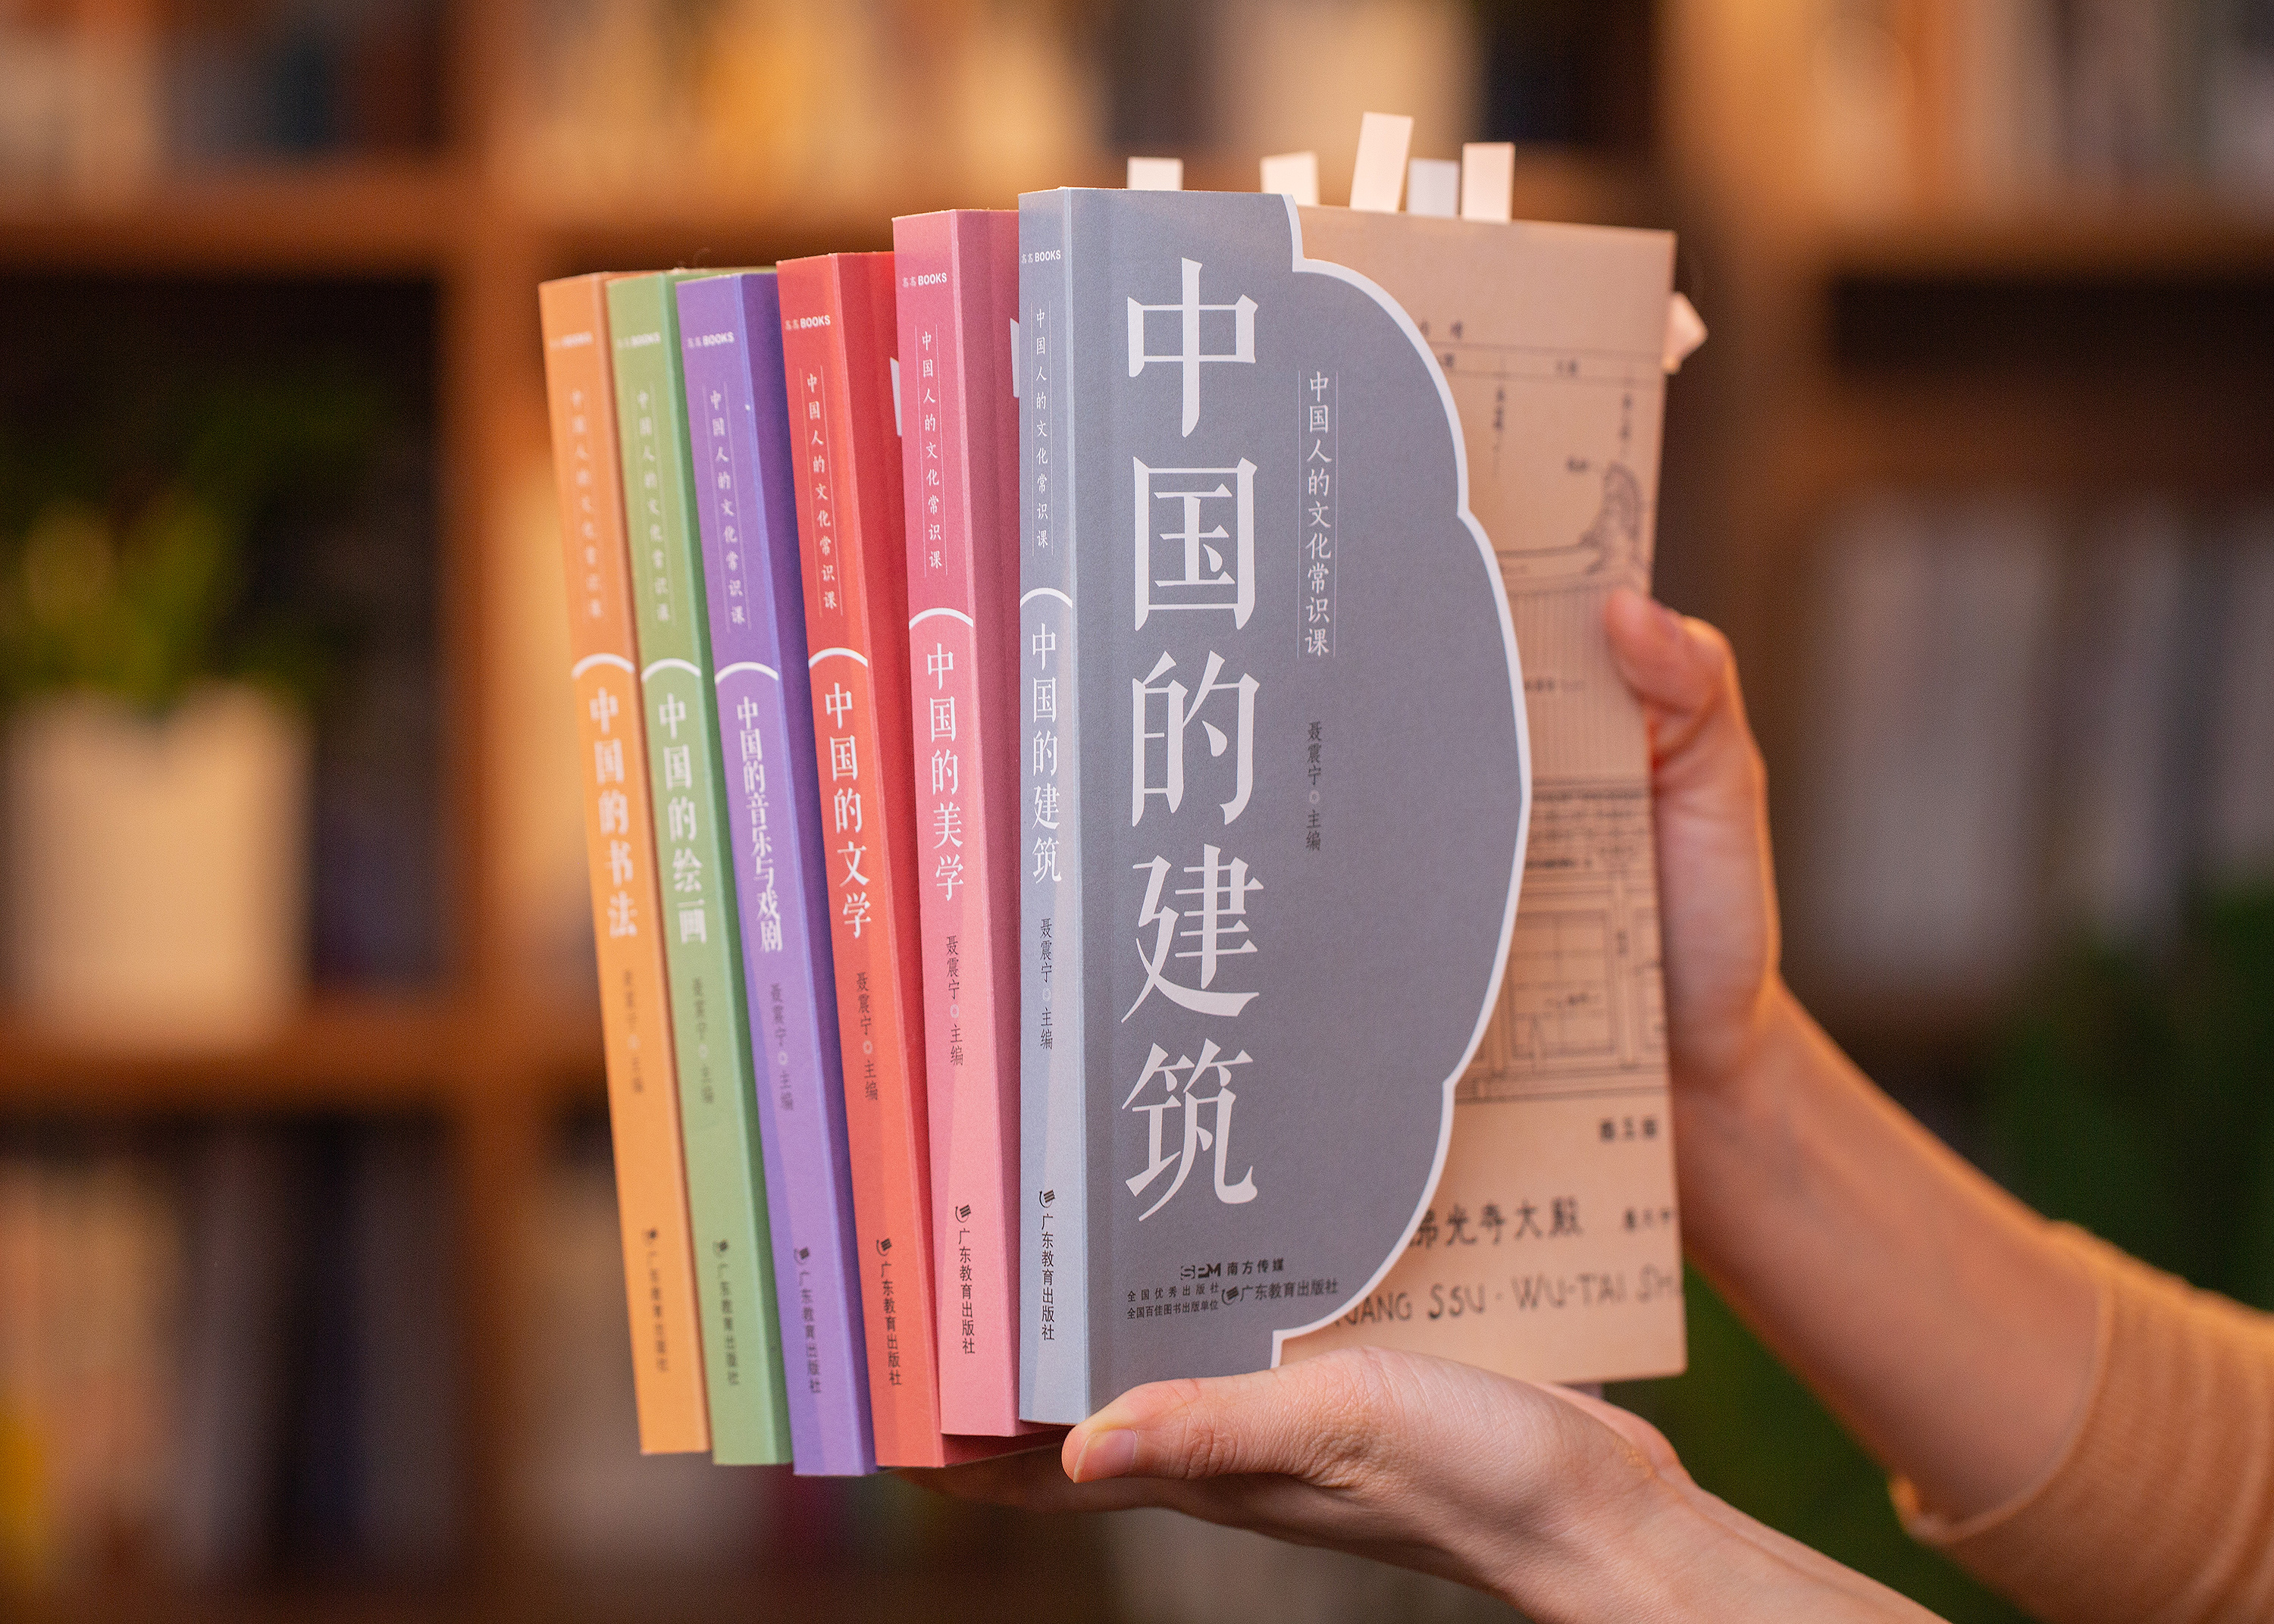 《中国人的文化常识课》全6册丨一口气读完5000年传统文化精华